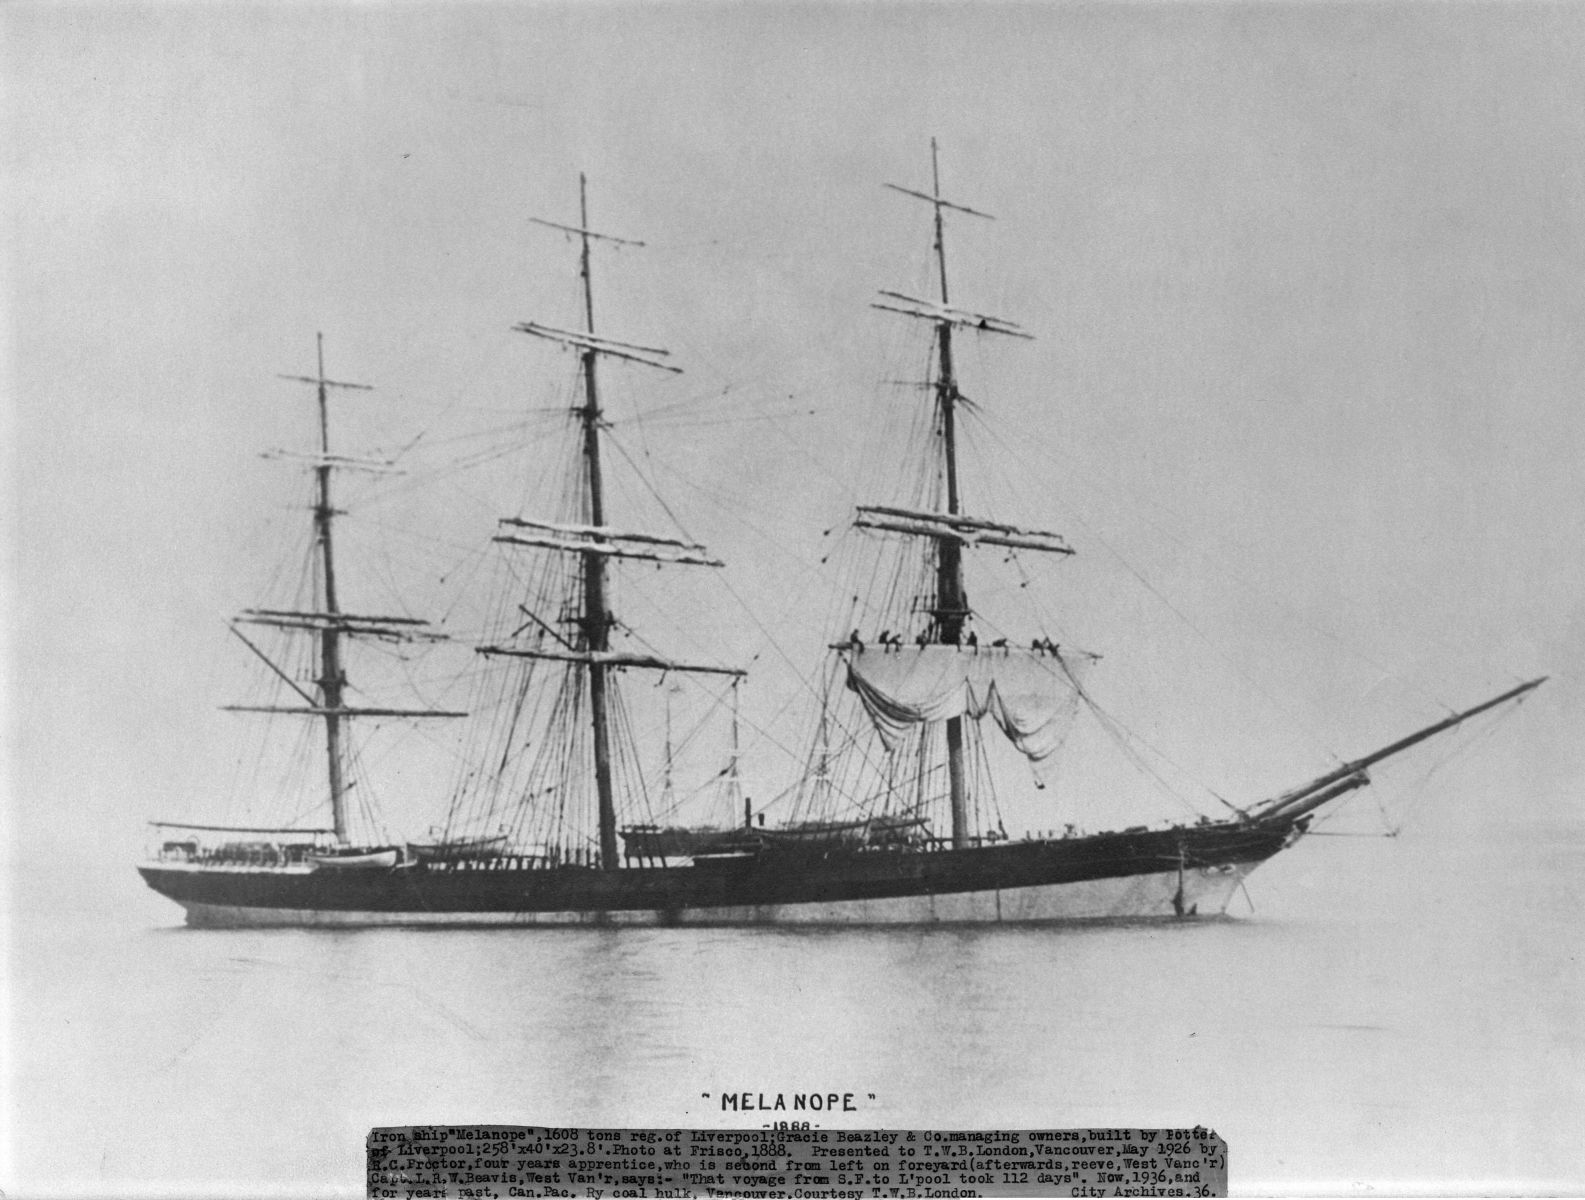 Melanope in 1888